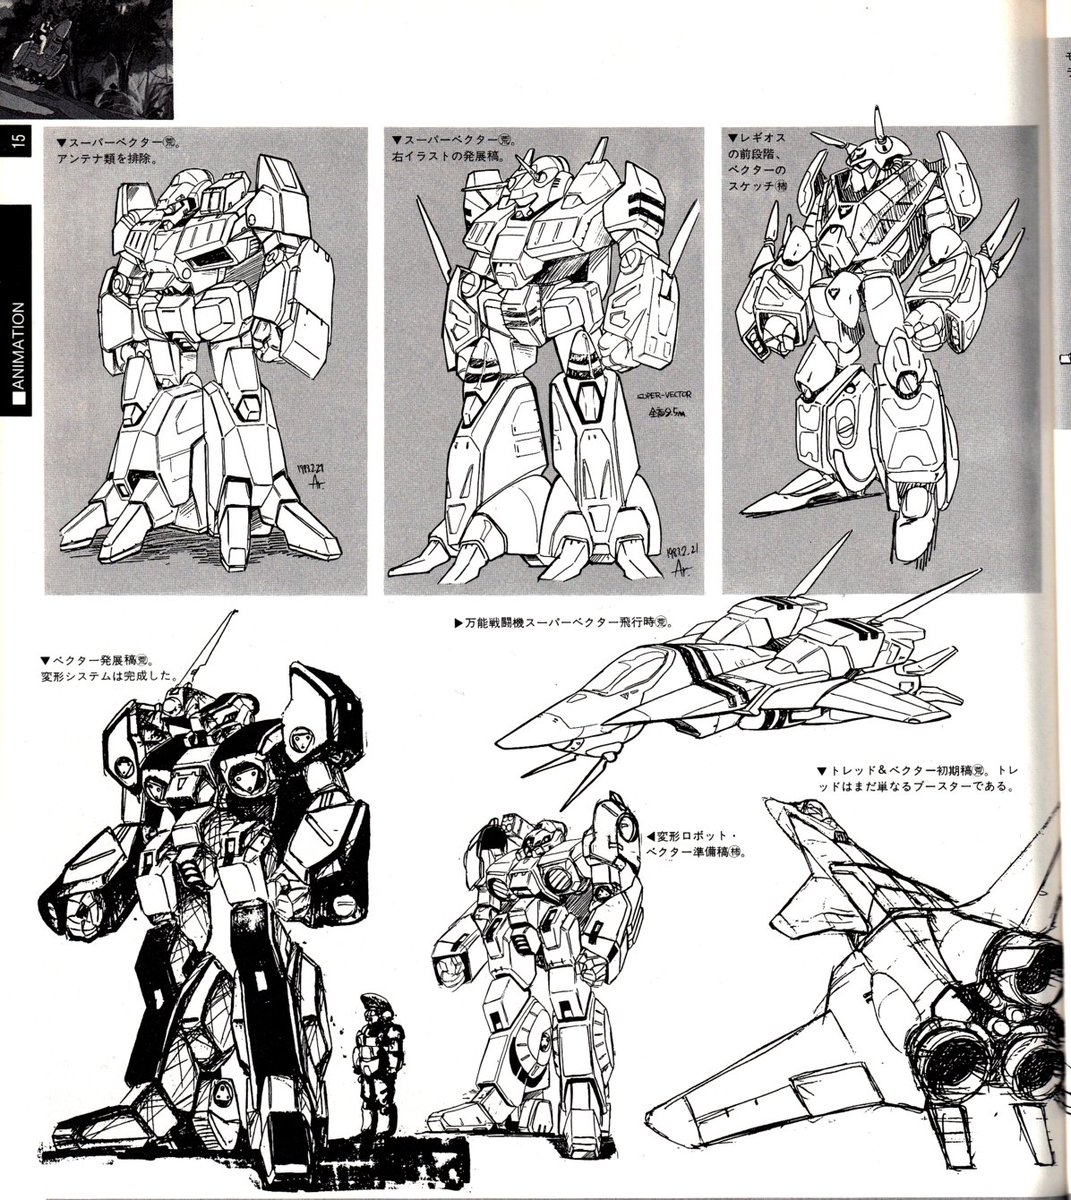 「アートミックデザインワークス」(1987年発行)掲載のモスピーダとレギオスの初期稿。
モスピーダは決定デザインに近いですが、ベクター時代のレギオスは結構キャラクター性の強い顔をしてますね😄
#モスピーダ
#レギオス
#アートミック
#Robotech 